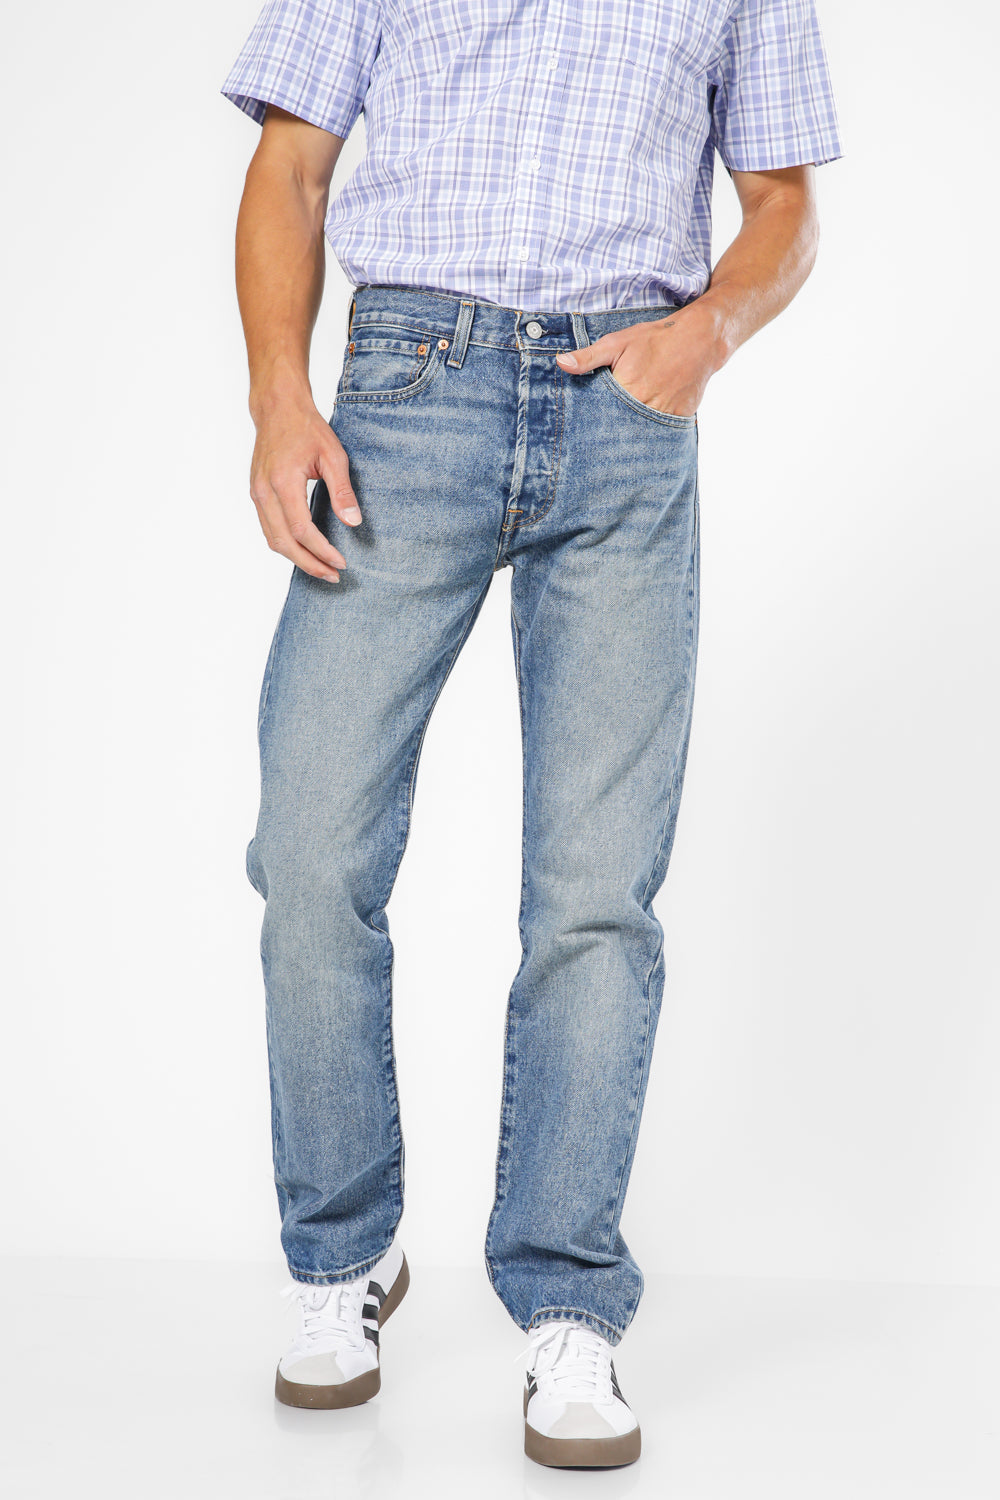 ג'ינס 501 בצבע כחול בהיר